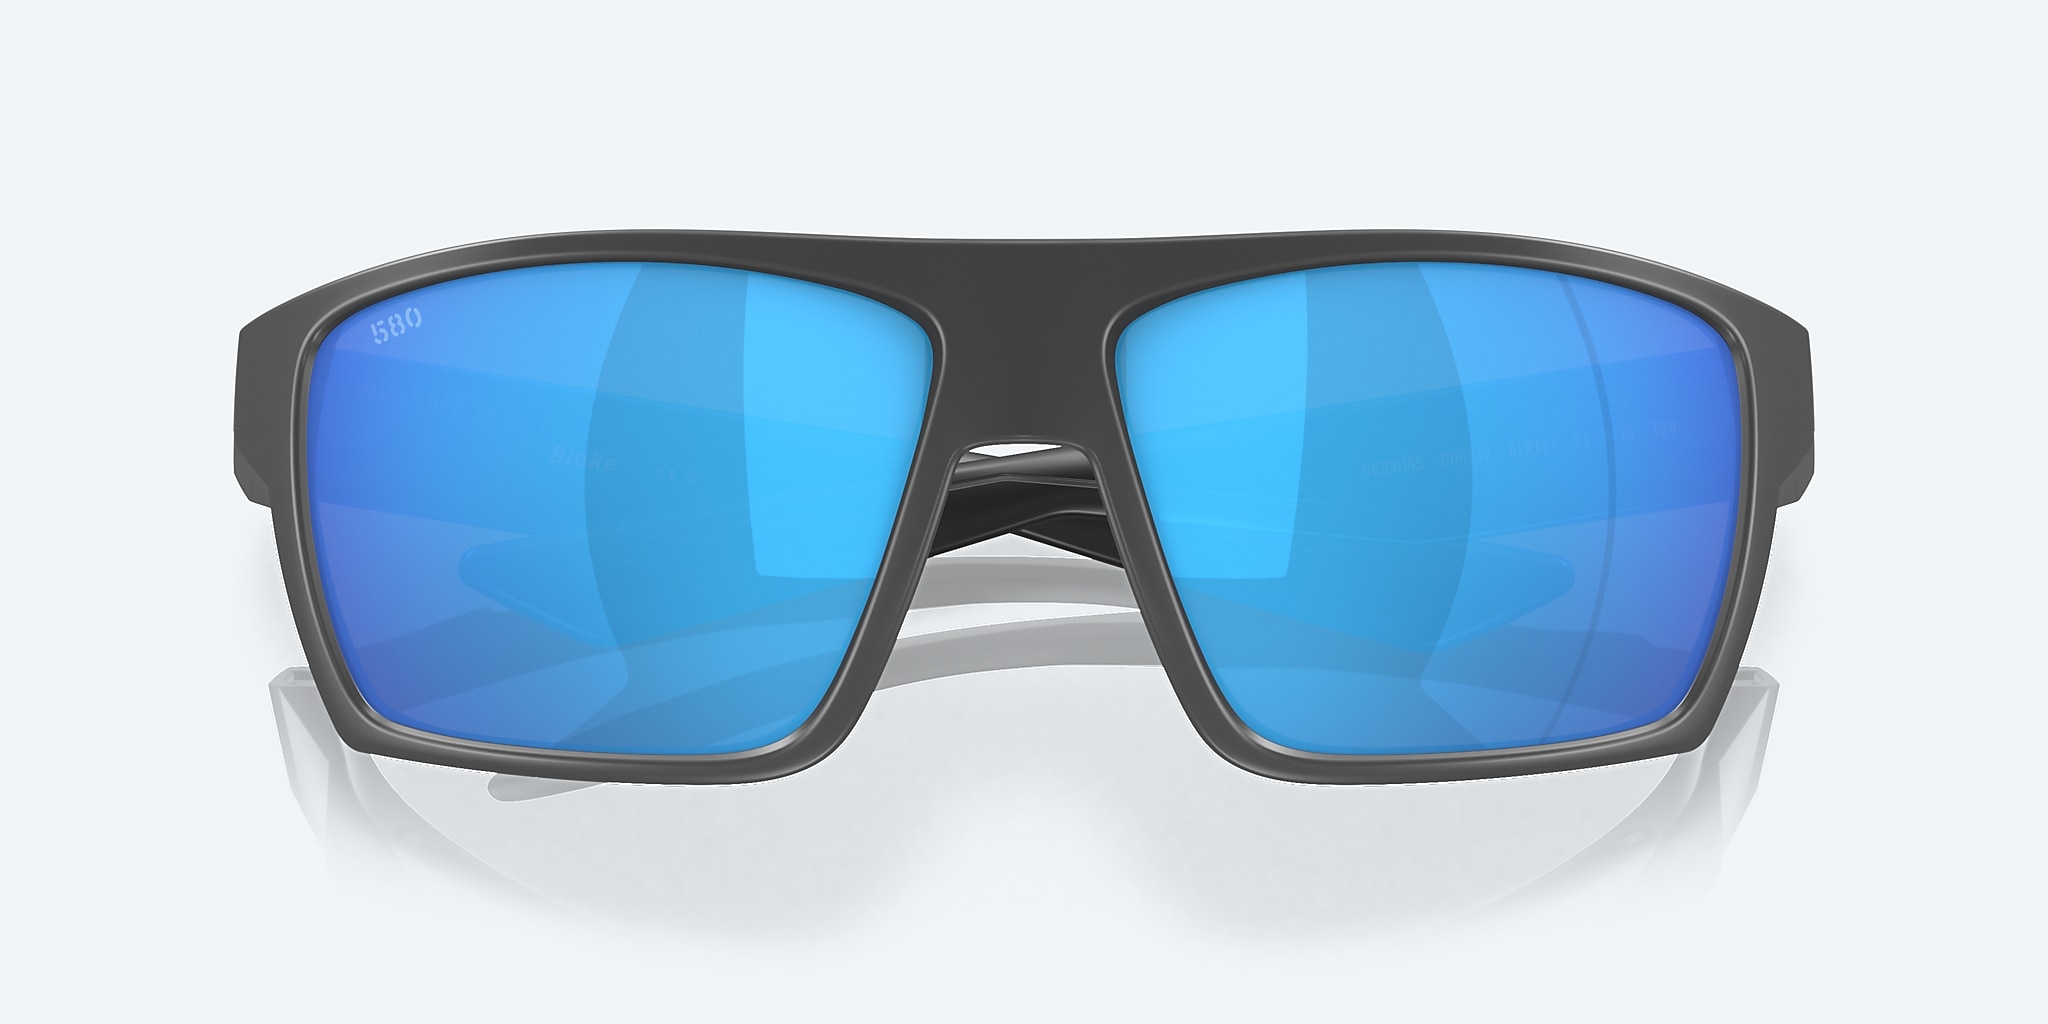 Mar® Blue | in Polarized Sunglasses Costa Bloke Del Mirror